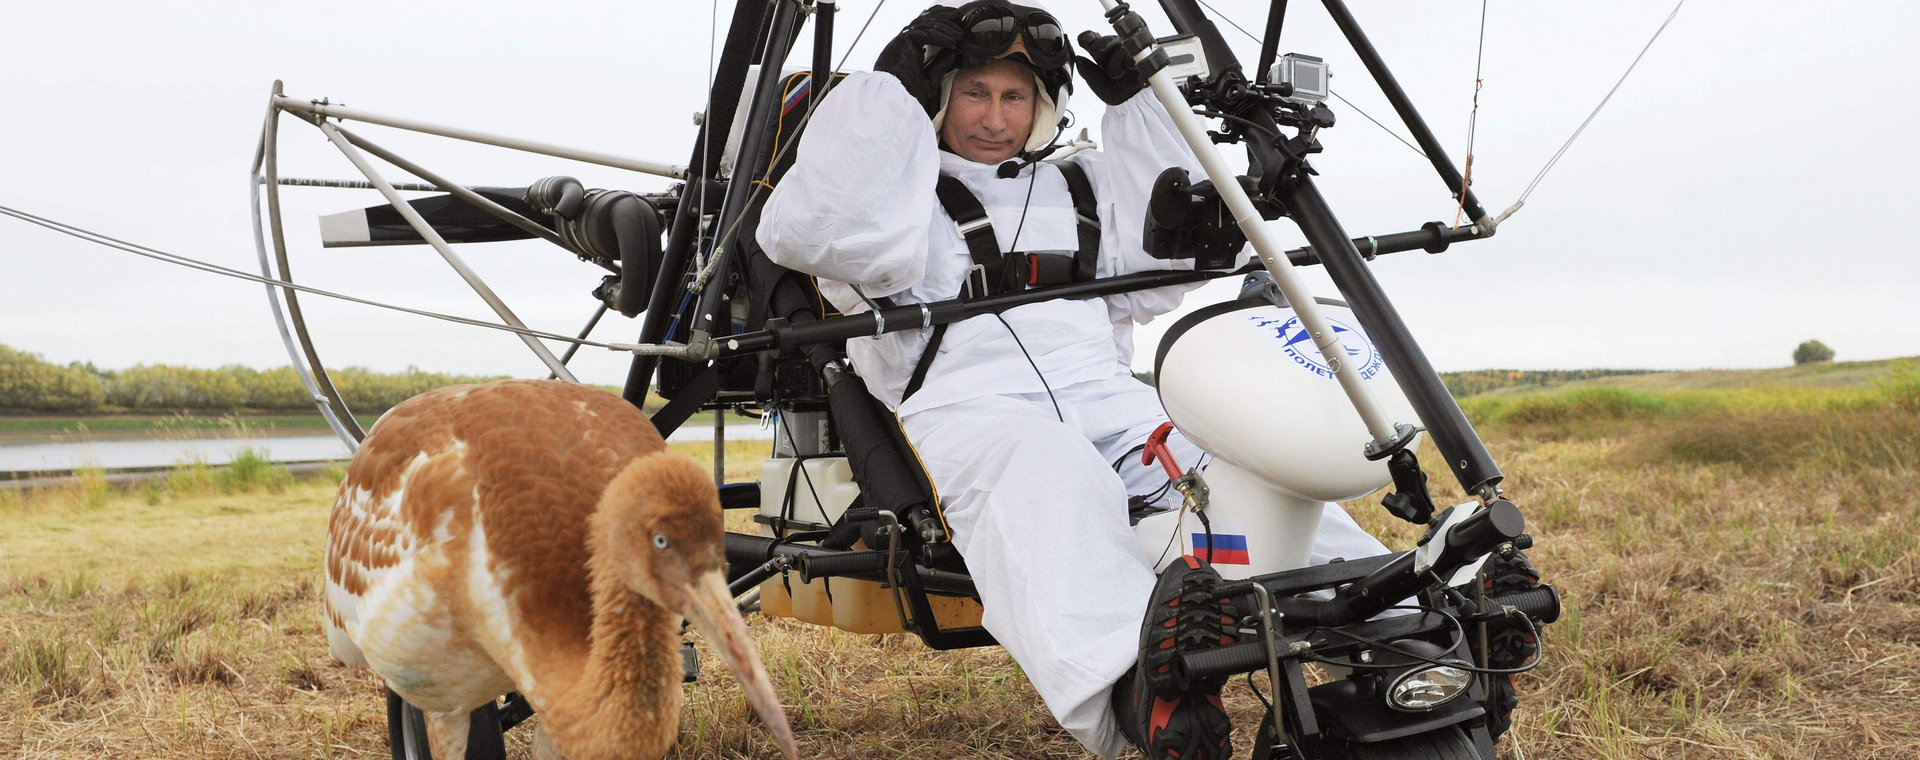 Prezydent Putin na motolotni, przy nim młody biały żuraw, 6 września 2012.